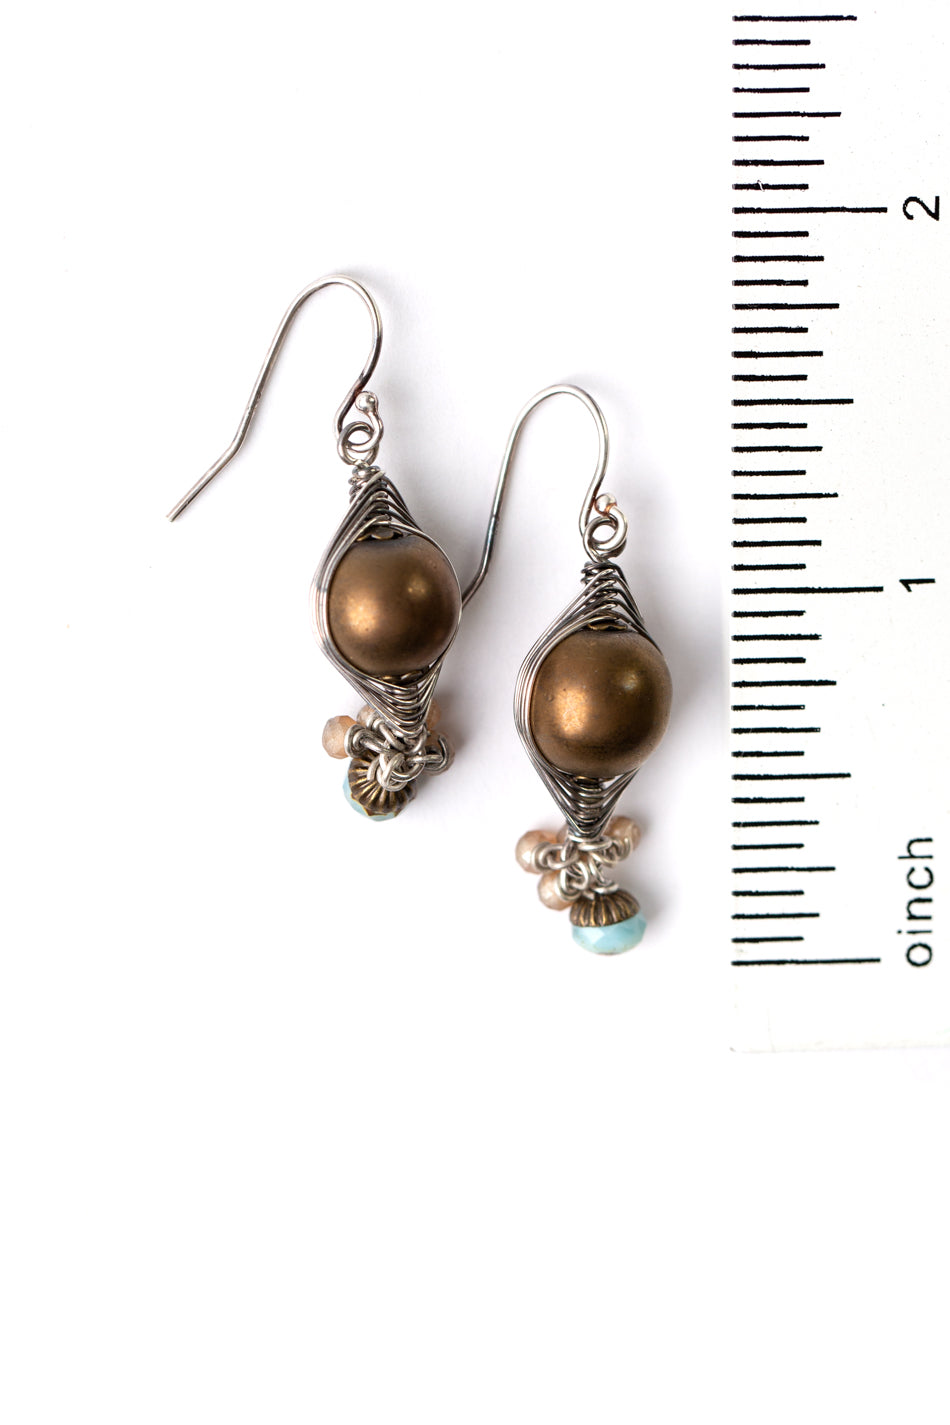 Courage Crystal, Brass, Czech Glass Herringbone Earrings